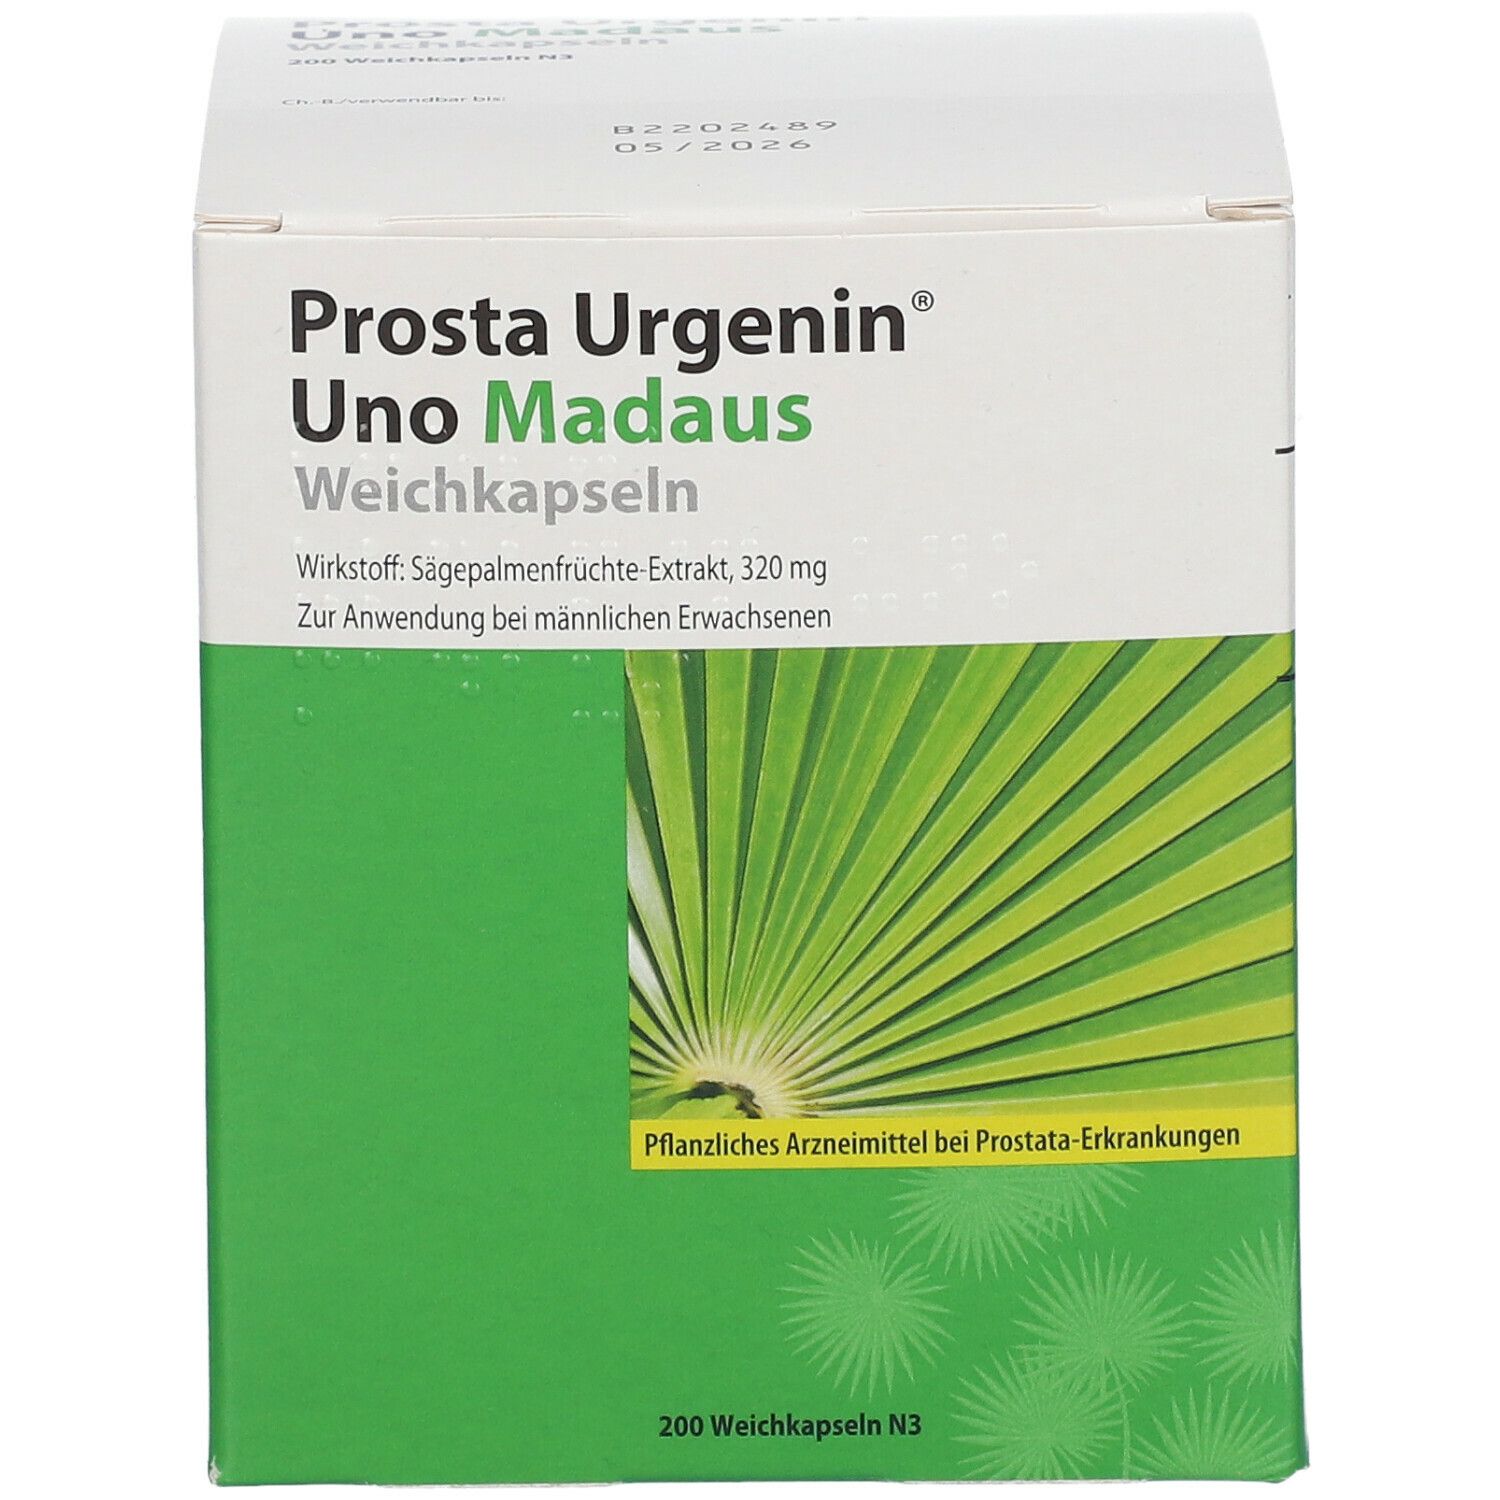 Prosta Urgenin® Uno Madaus